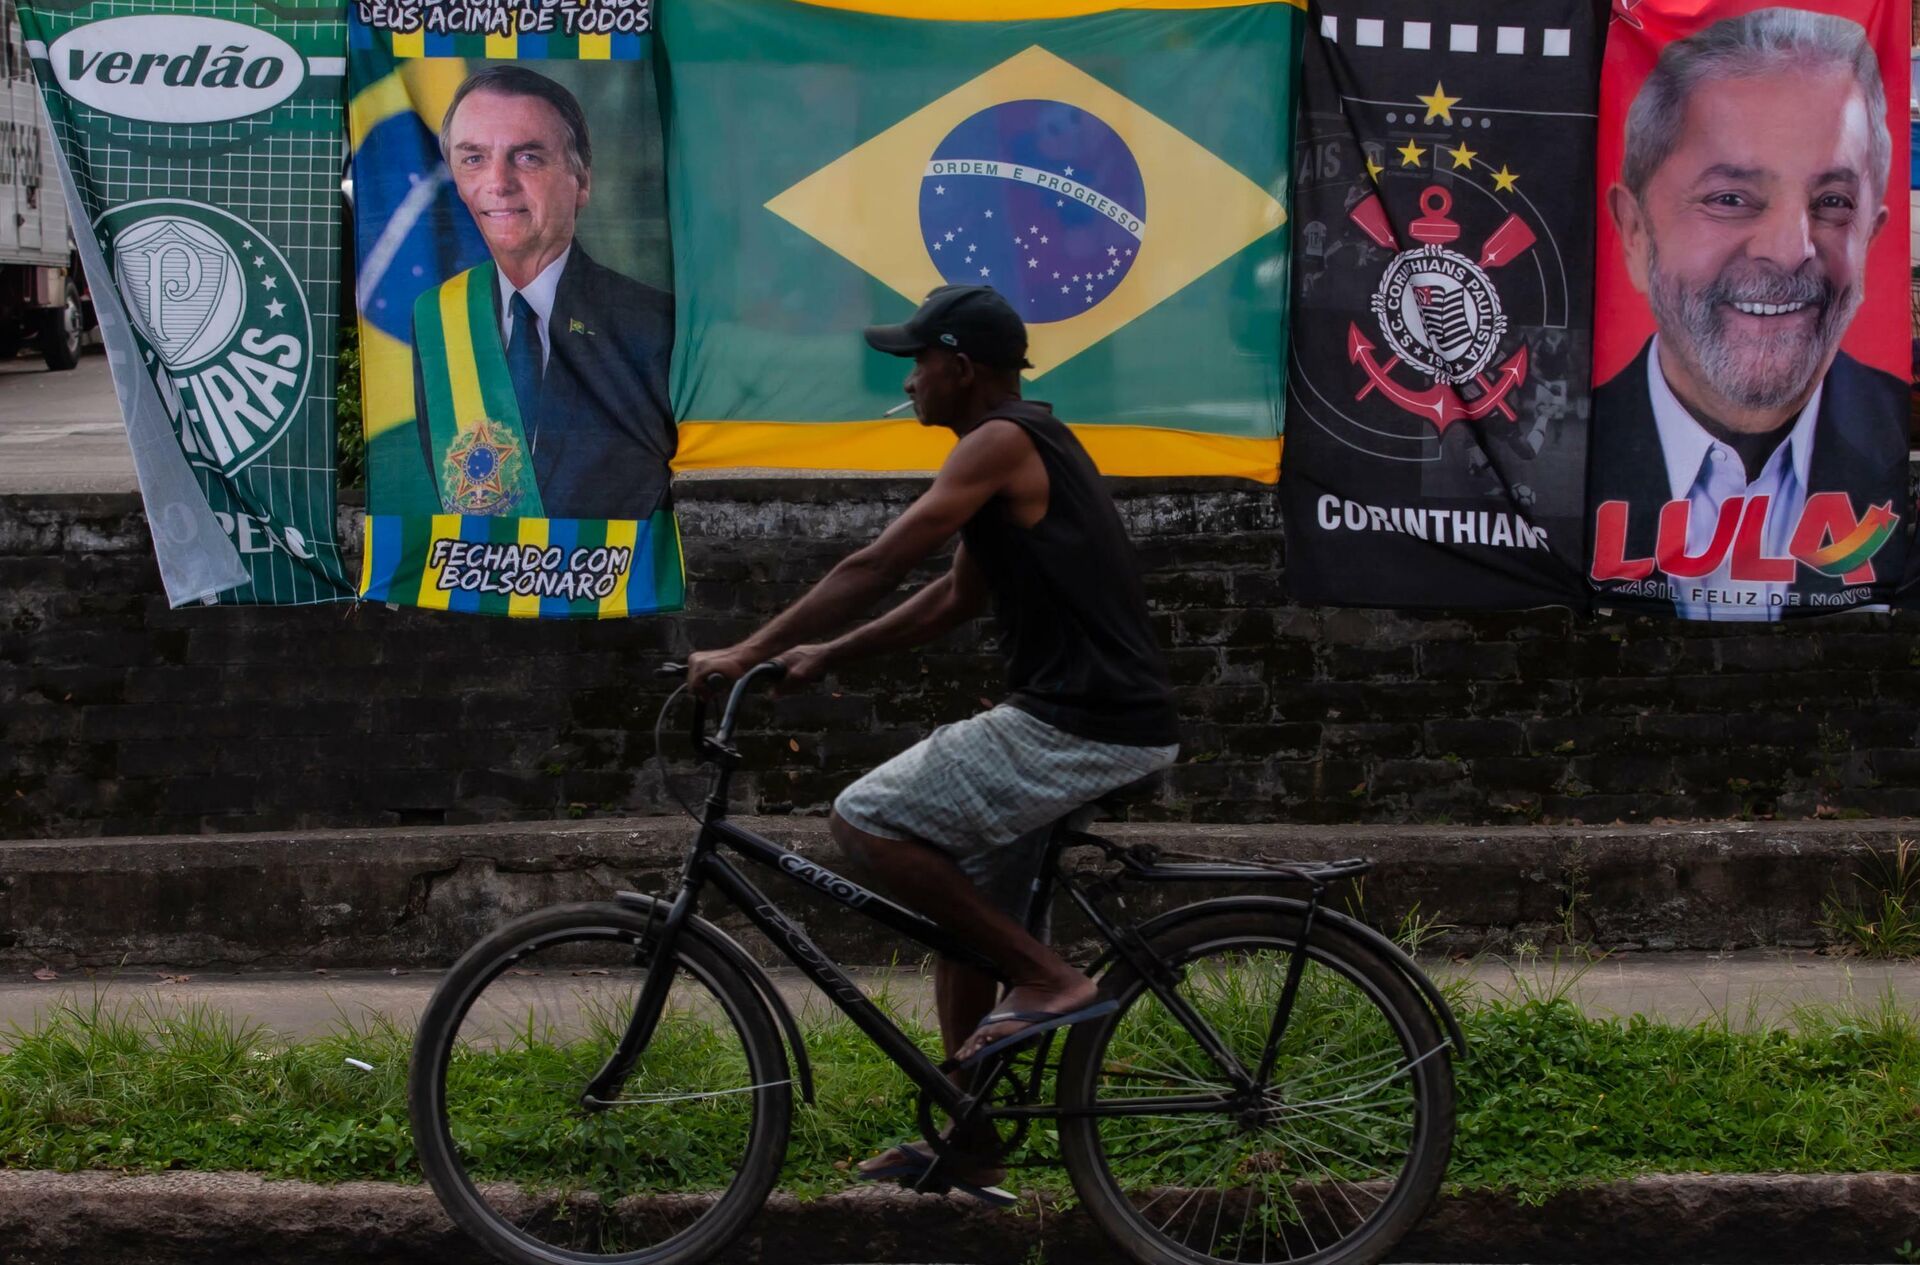 Ambulante vende bandeiras de Jair Bolsonaro e Lula no mesmo varal na cidade de Santos, em São Paulo, em 25 de janeiro de 2022 - Sputnik Brasil, 1920, 09.03.2022